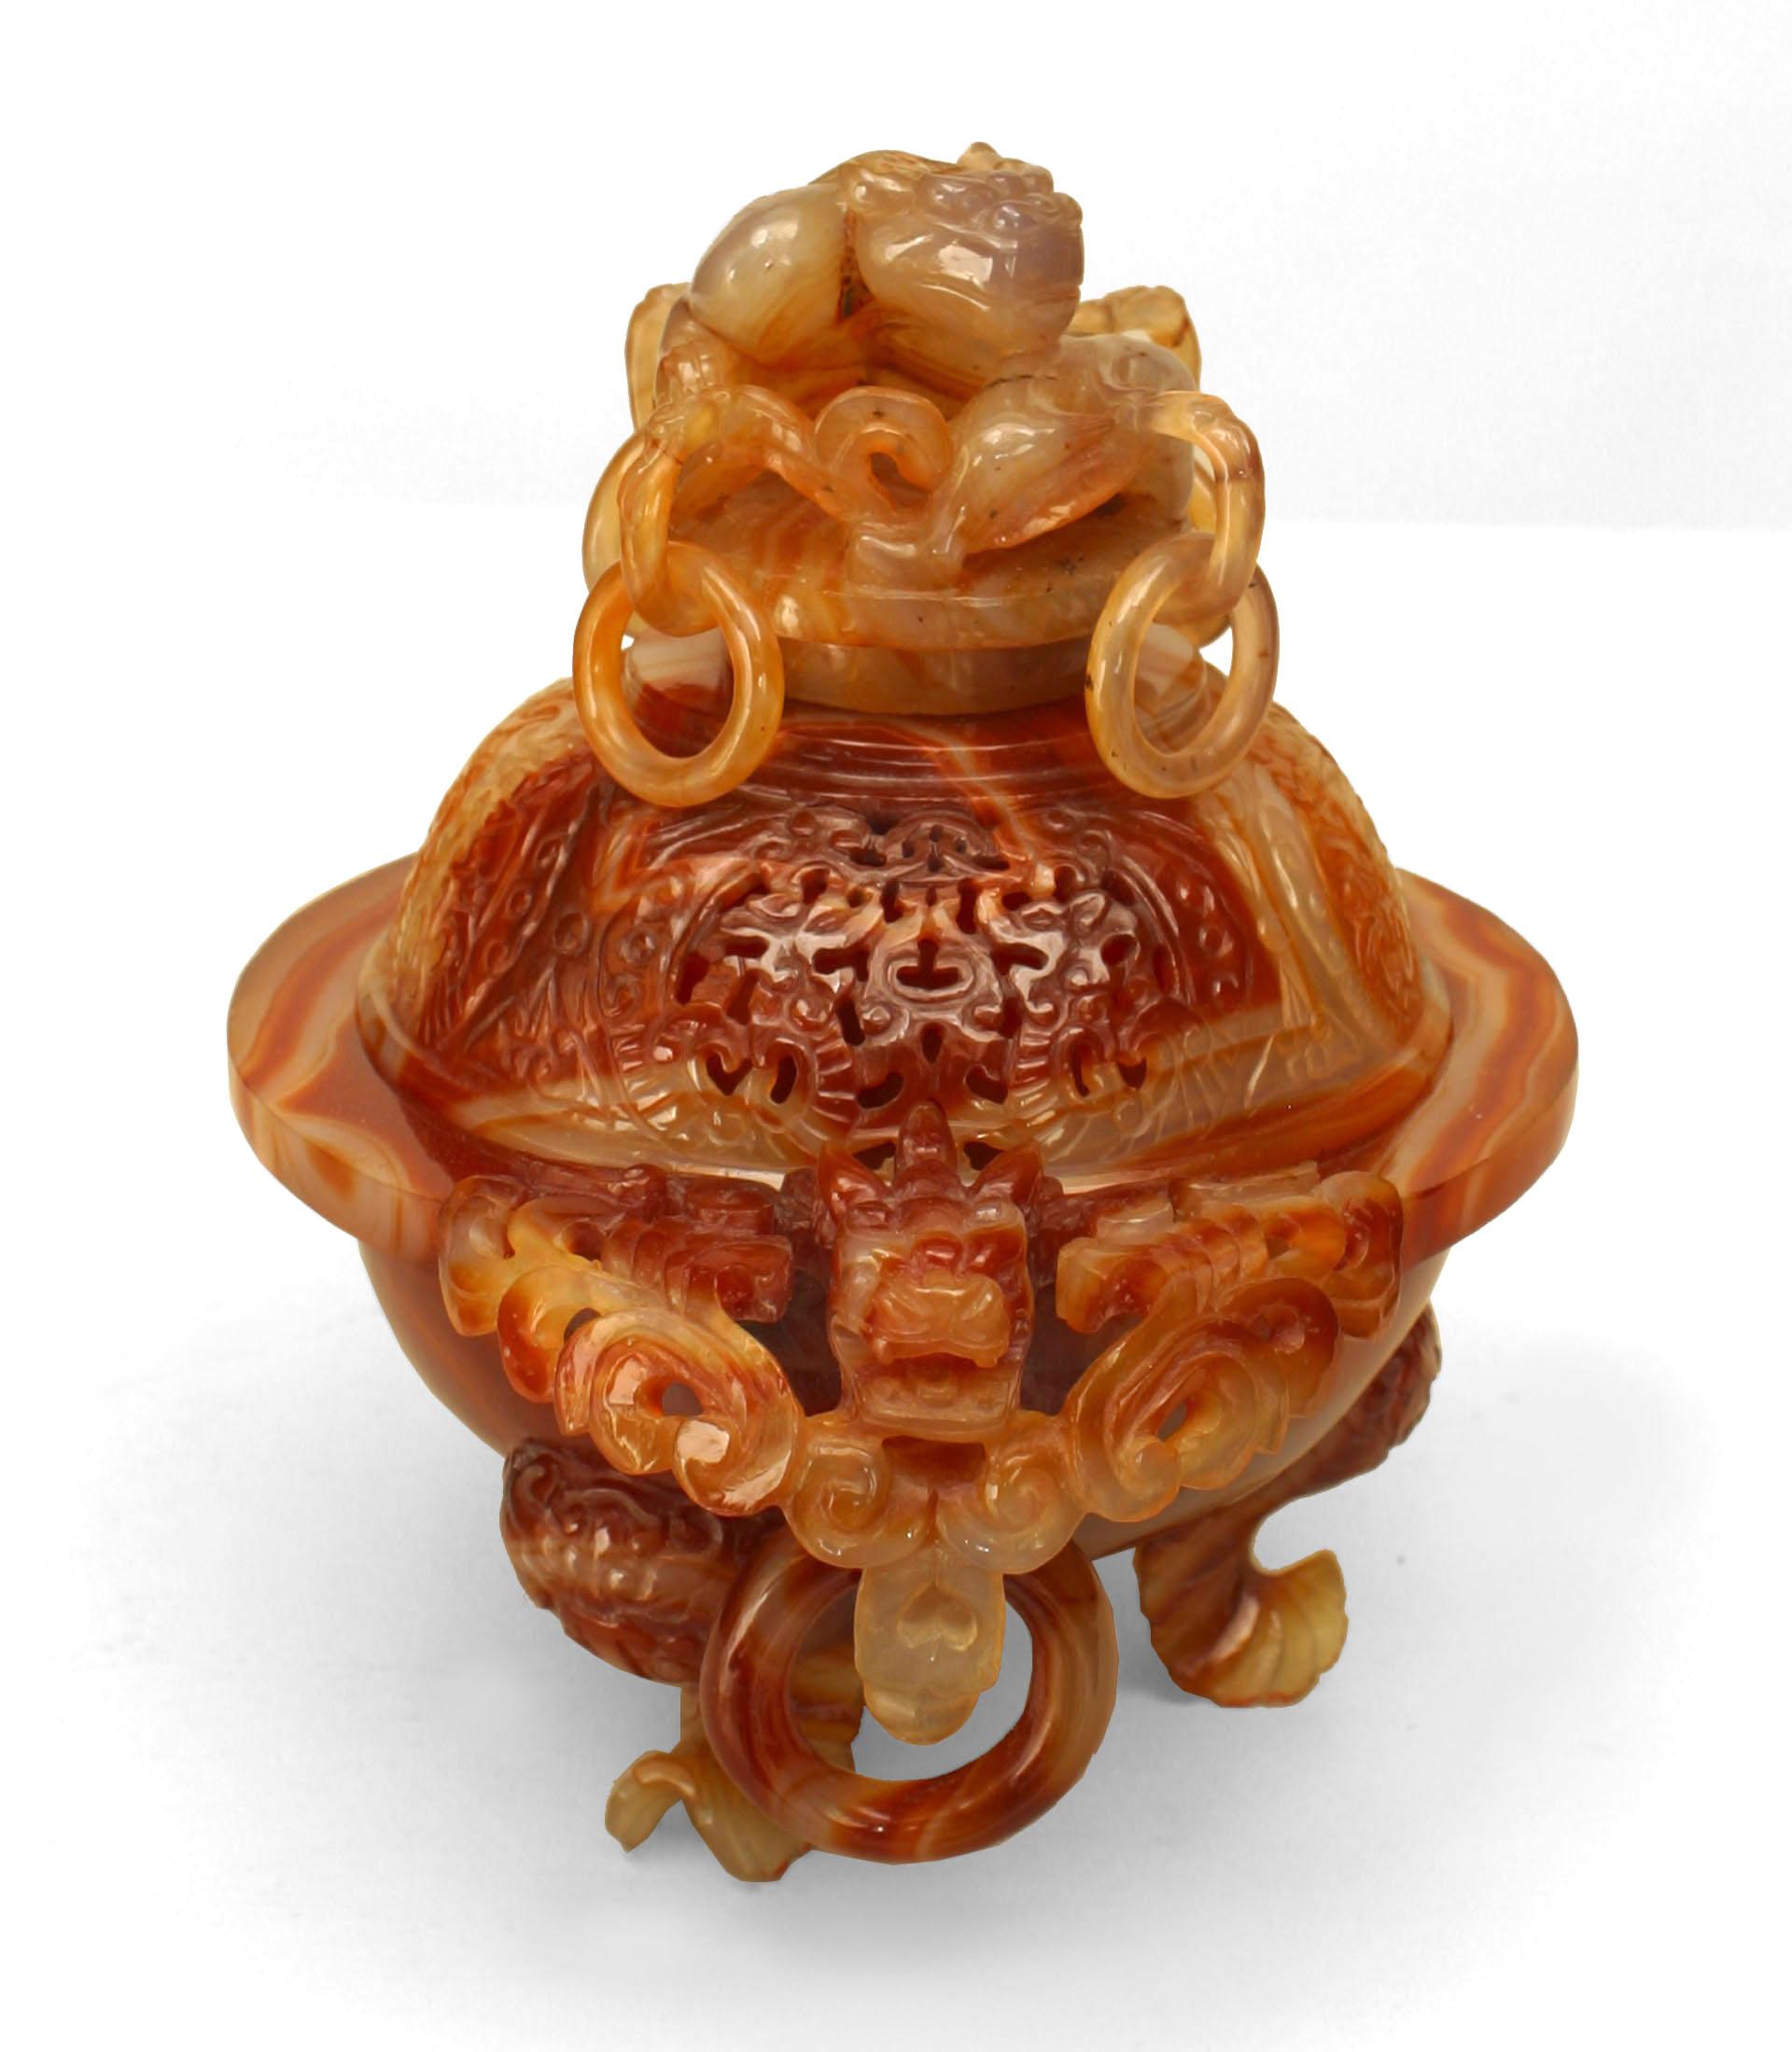 Urne (brûle-parfum) asiatique chinoise en agate couleur rouille avec couvercle rond percé d'anneaux et poignées sculptées de singe et de dragon reposant sur une base de 4 poissons. (base moderne de 1¬O